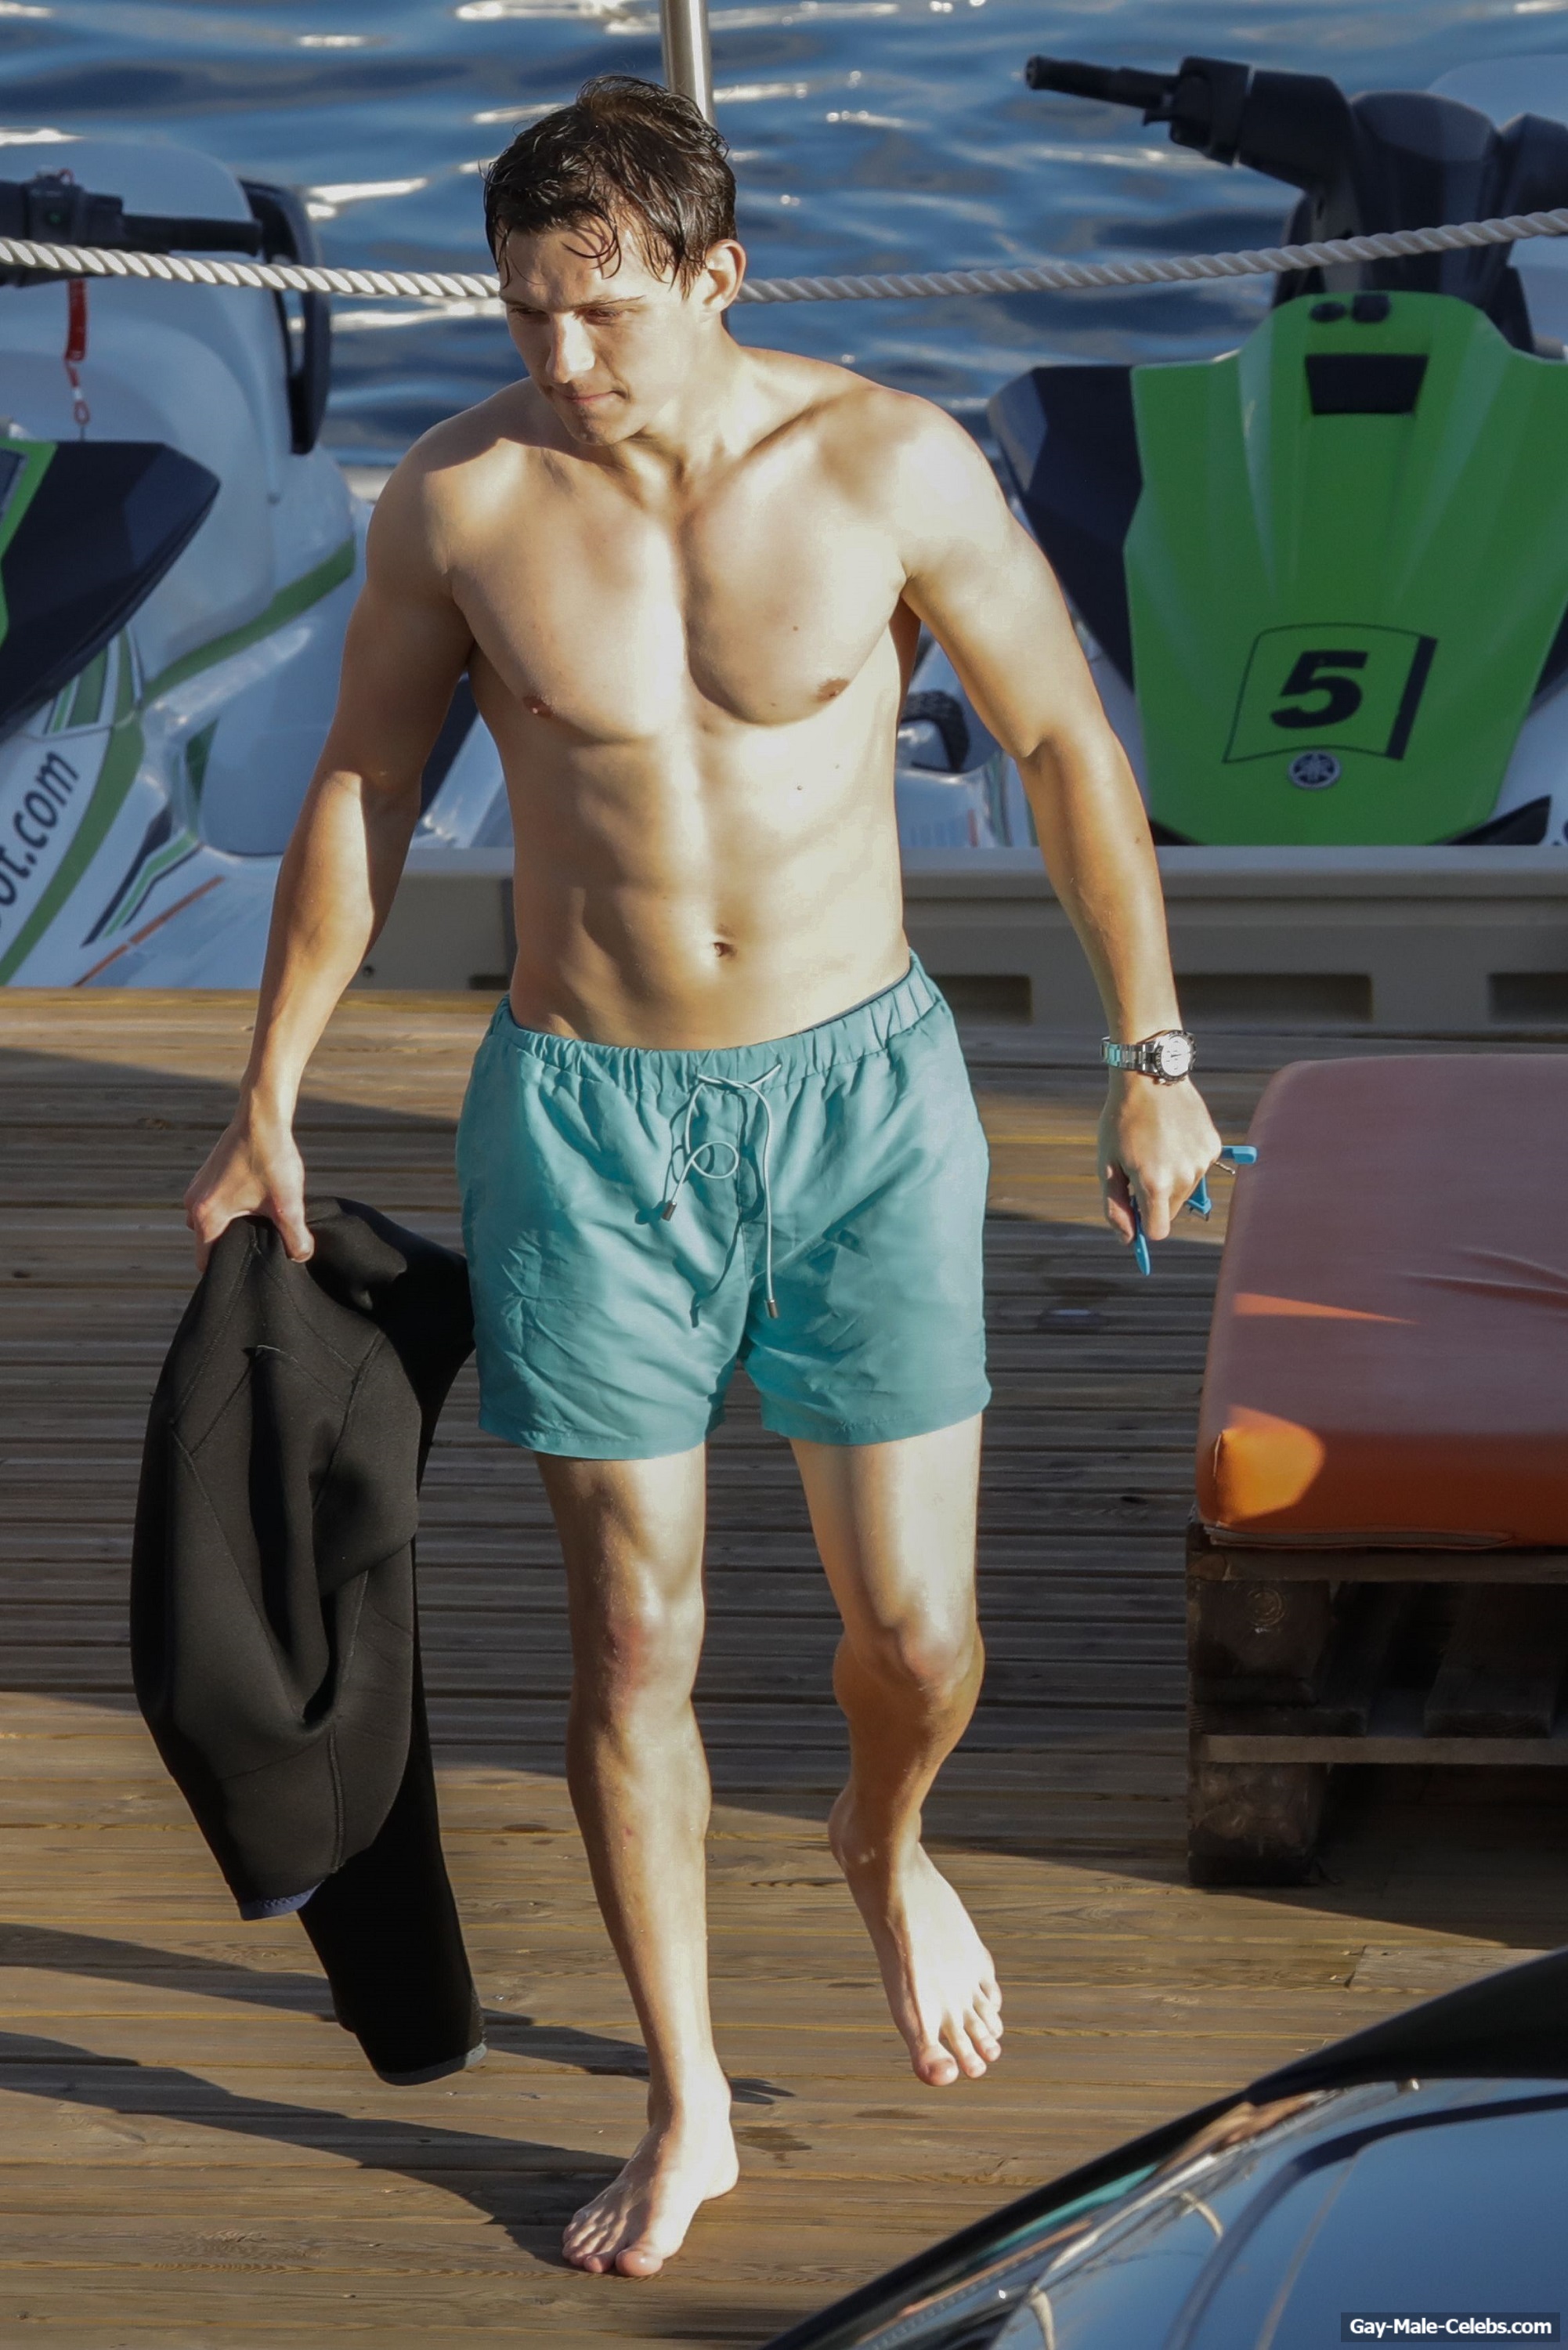 Tom Holland Looks Hot Shirtless During Jet Ski